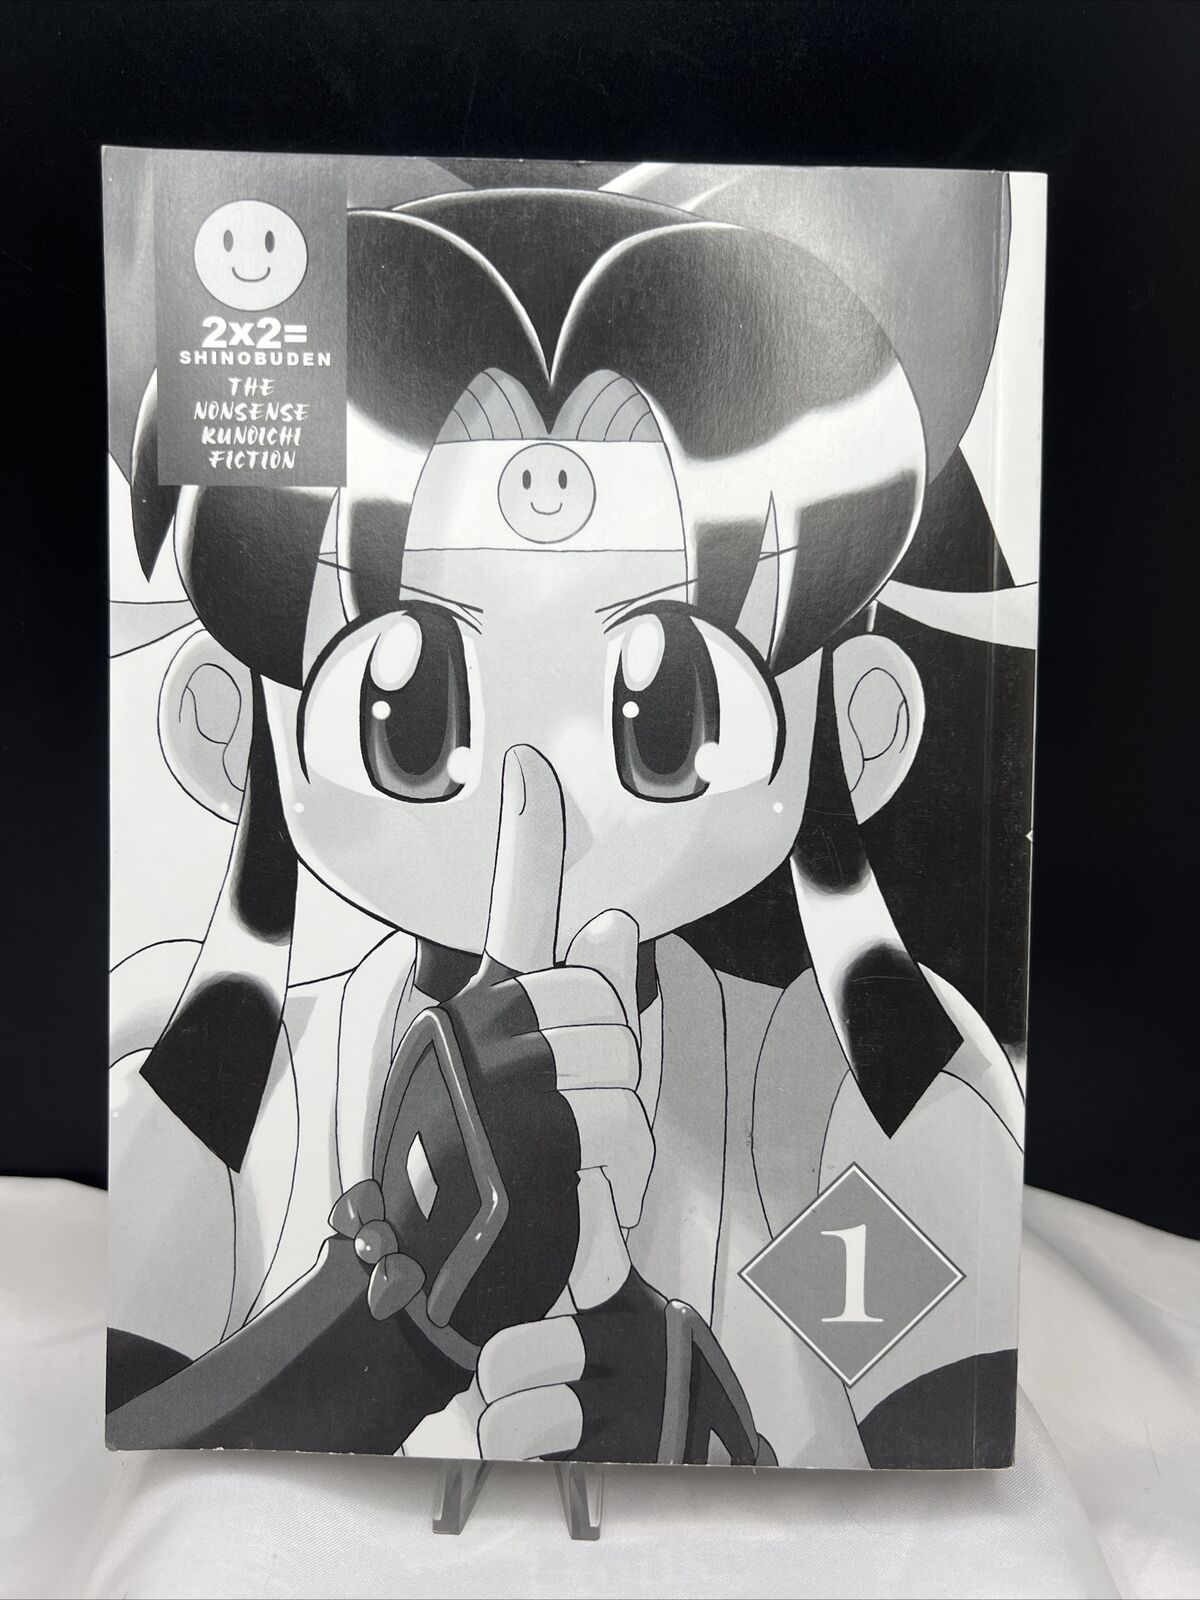 Ninin Ga Shinobuden Volume 1 2x2= Shinobuden The Nonsense Kunoichi Fiction 2006